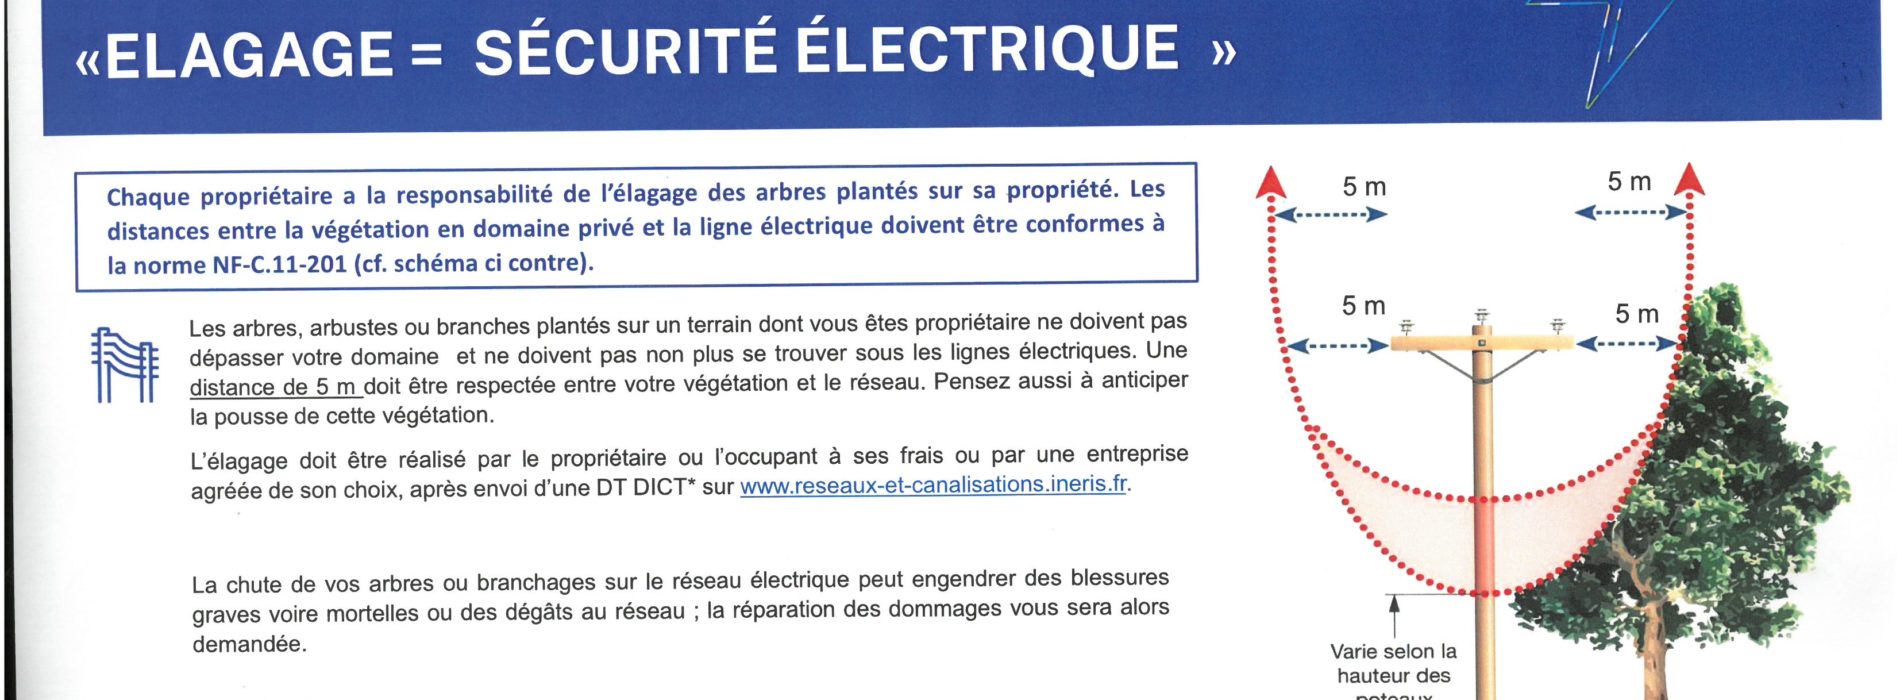 ENEDIS VOUS INFORME ELAGAGE SECURITE ELECTRIQUE